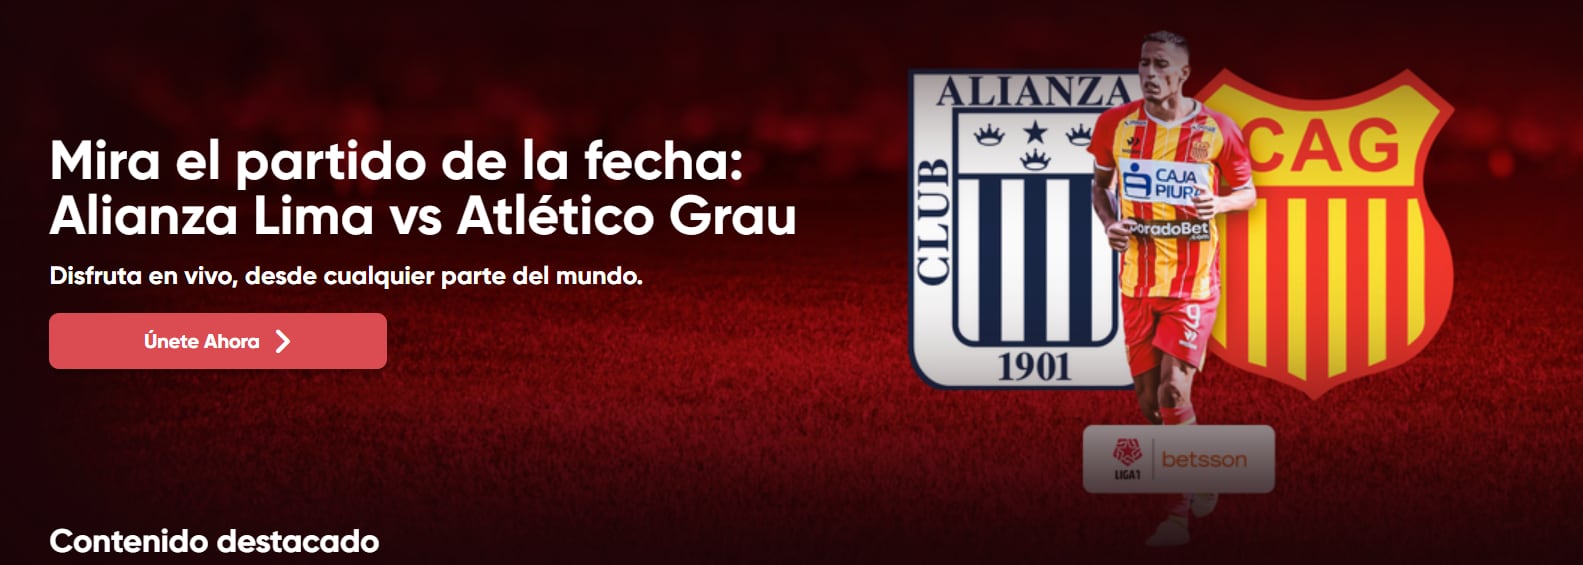 Anuncio del Alianza Lima vs Atlético Grau en Liga 1 Play.